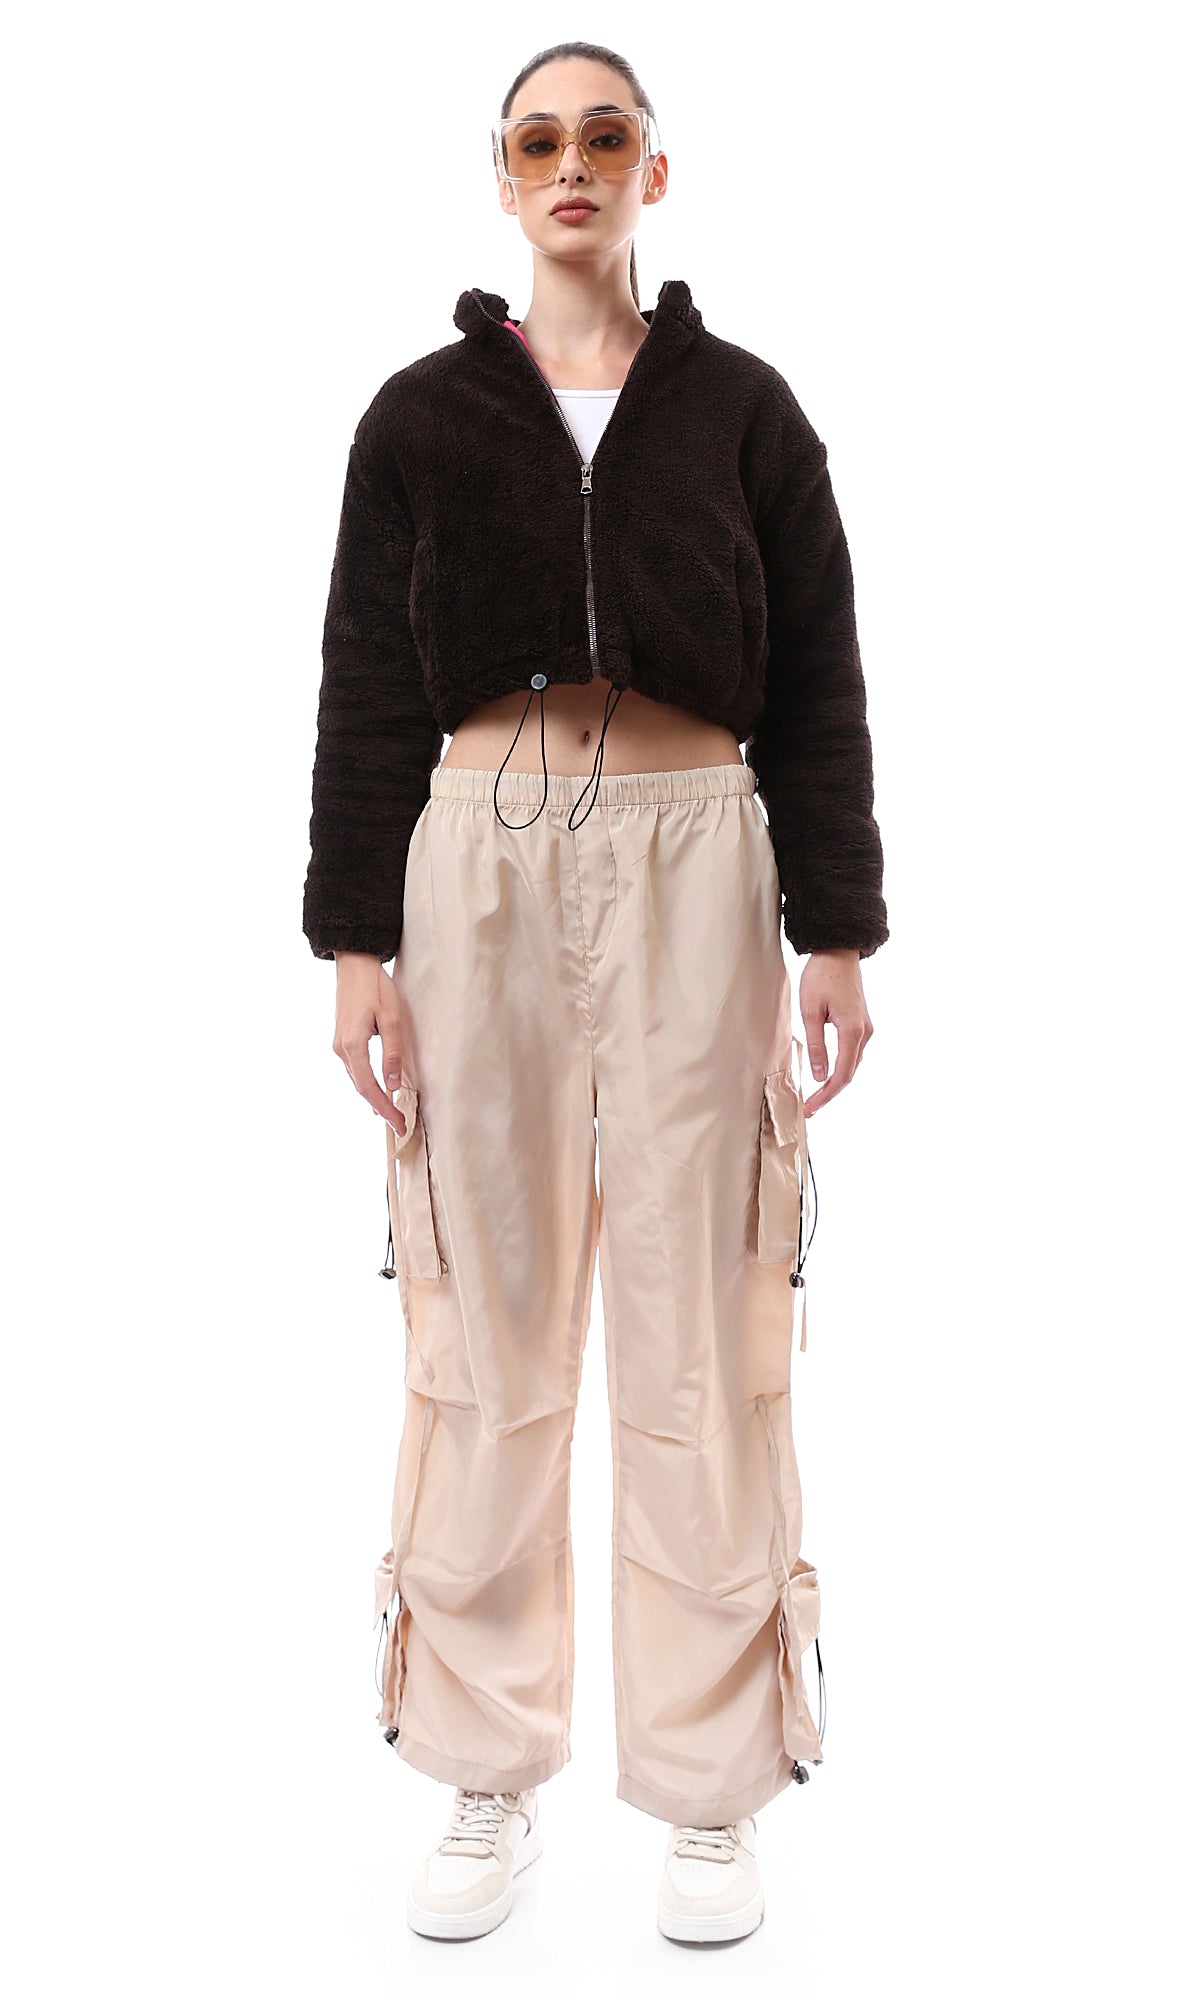 O174171 Burnt Brown Fur Short Jacket With Adjustable Trim